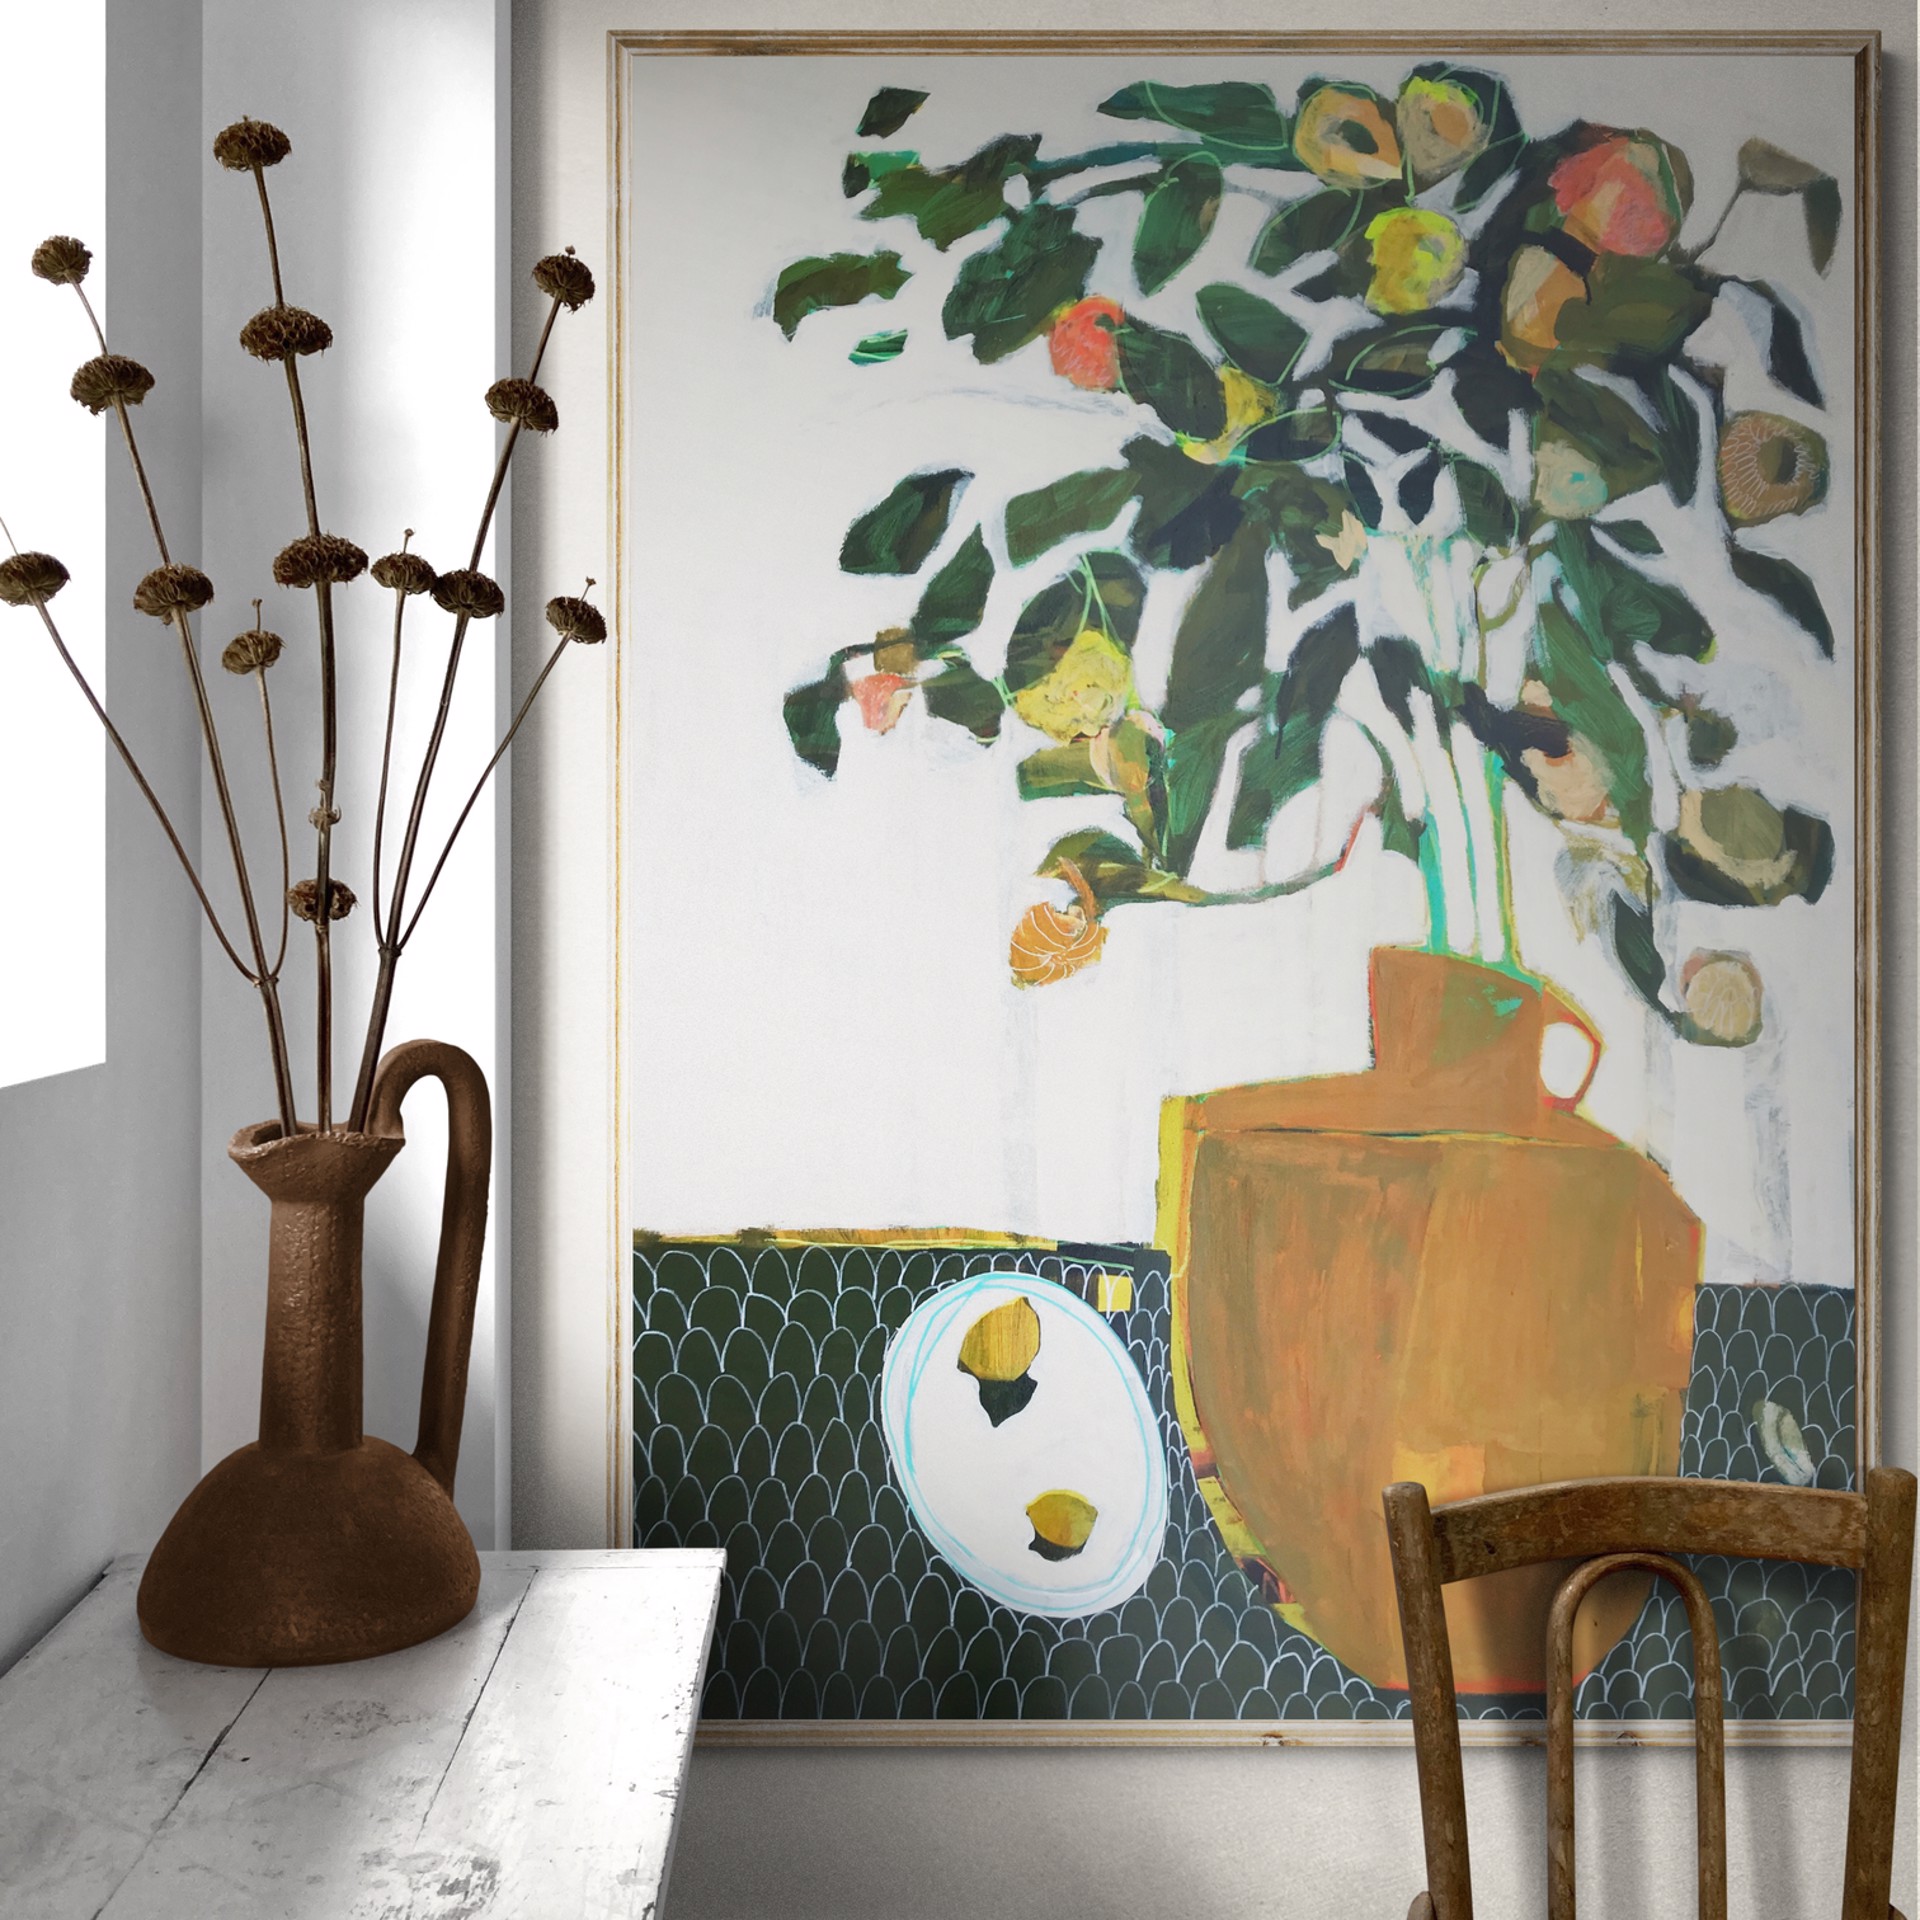 Vase, Lemons and Seashell on Table by Rachael Van Dyke